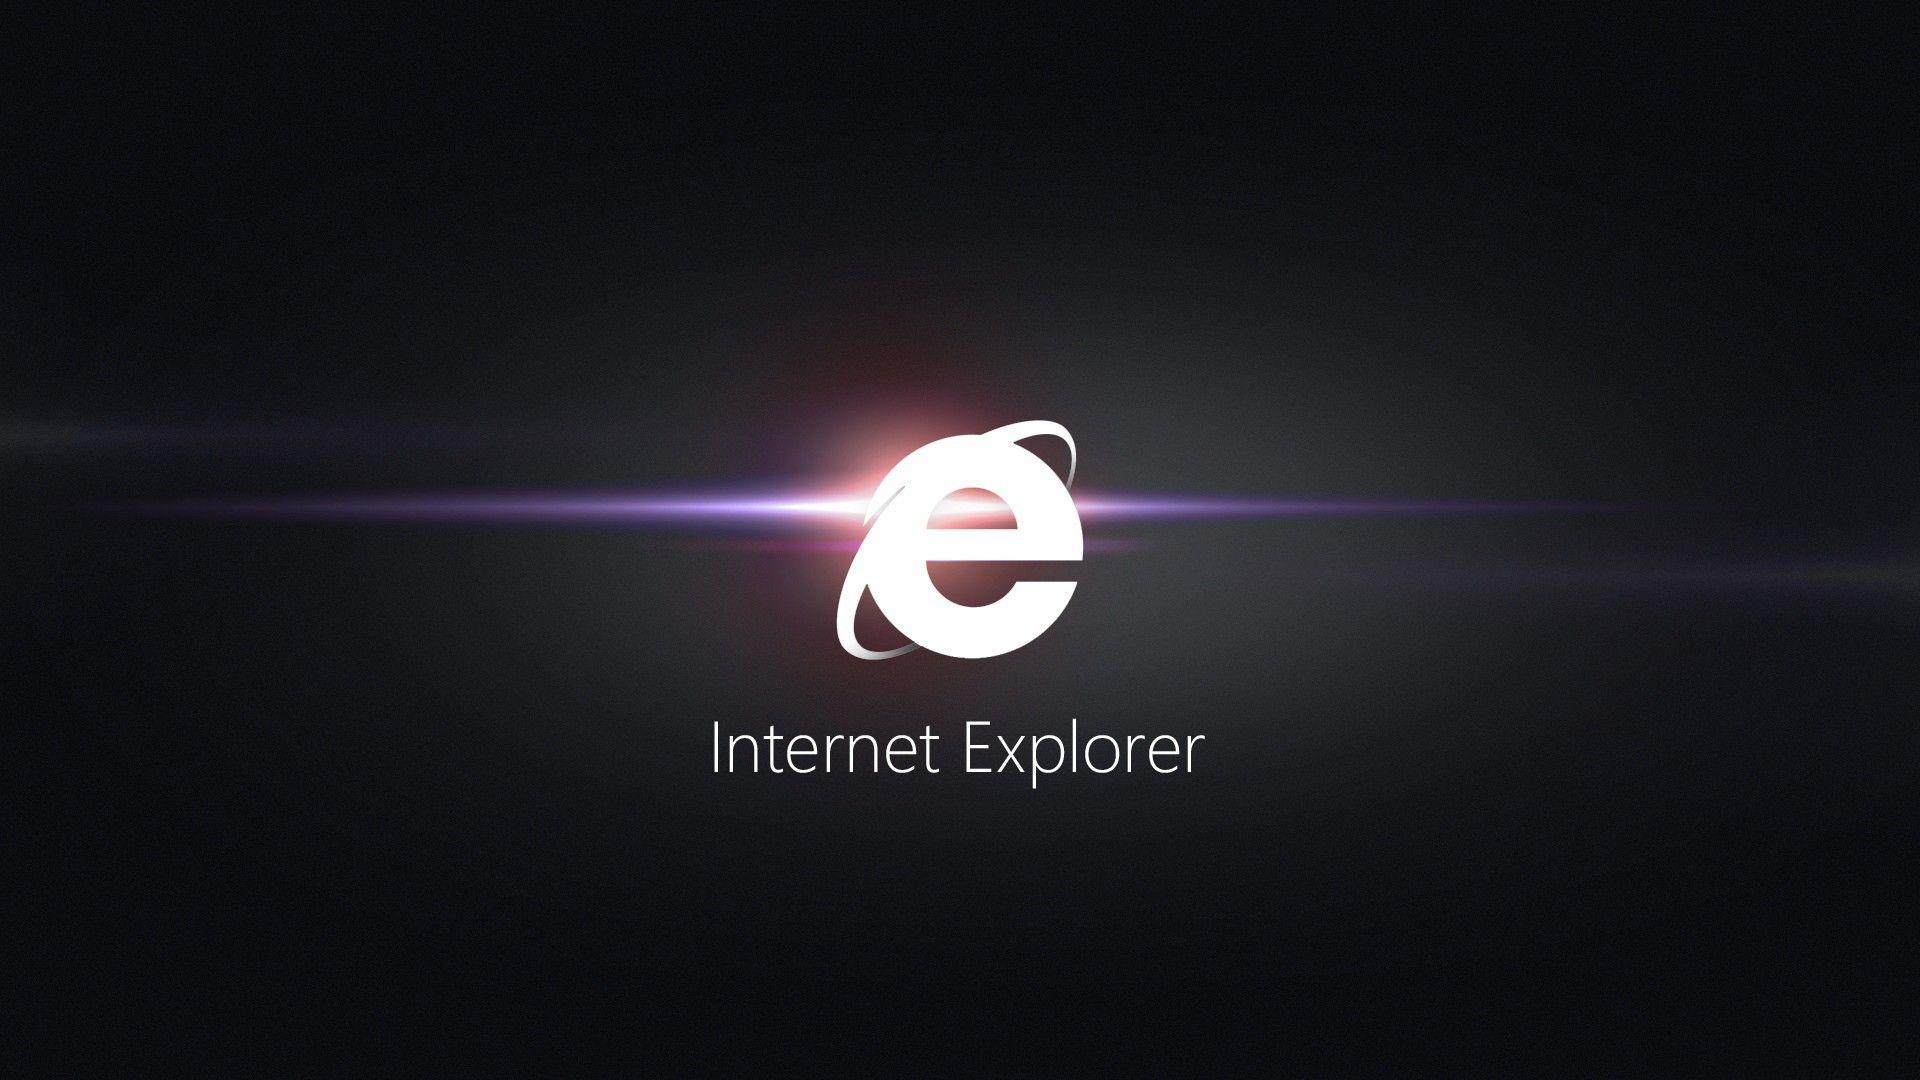 Fonds d&;écran Internet Explorer, tous les wallpaper Internet